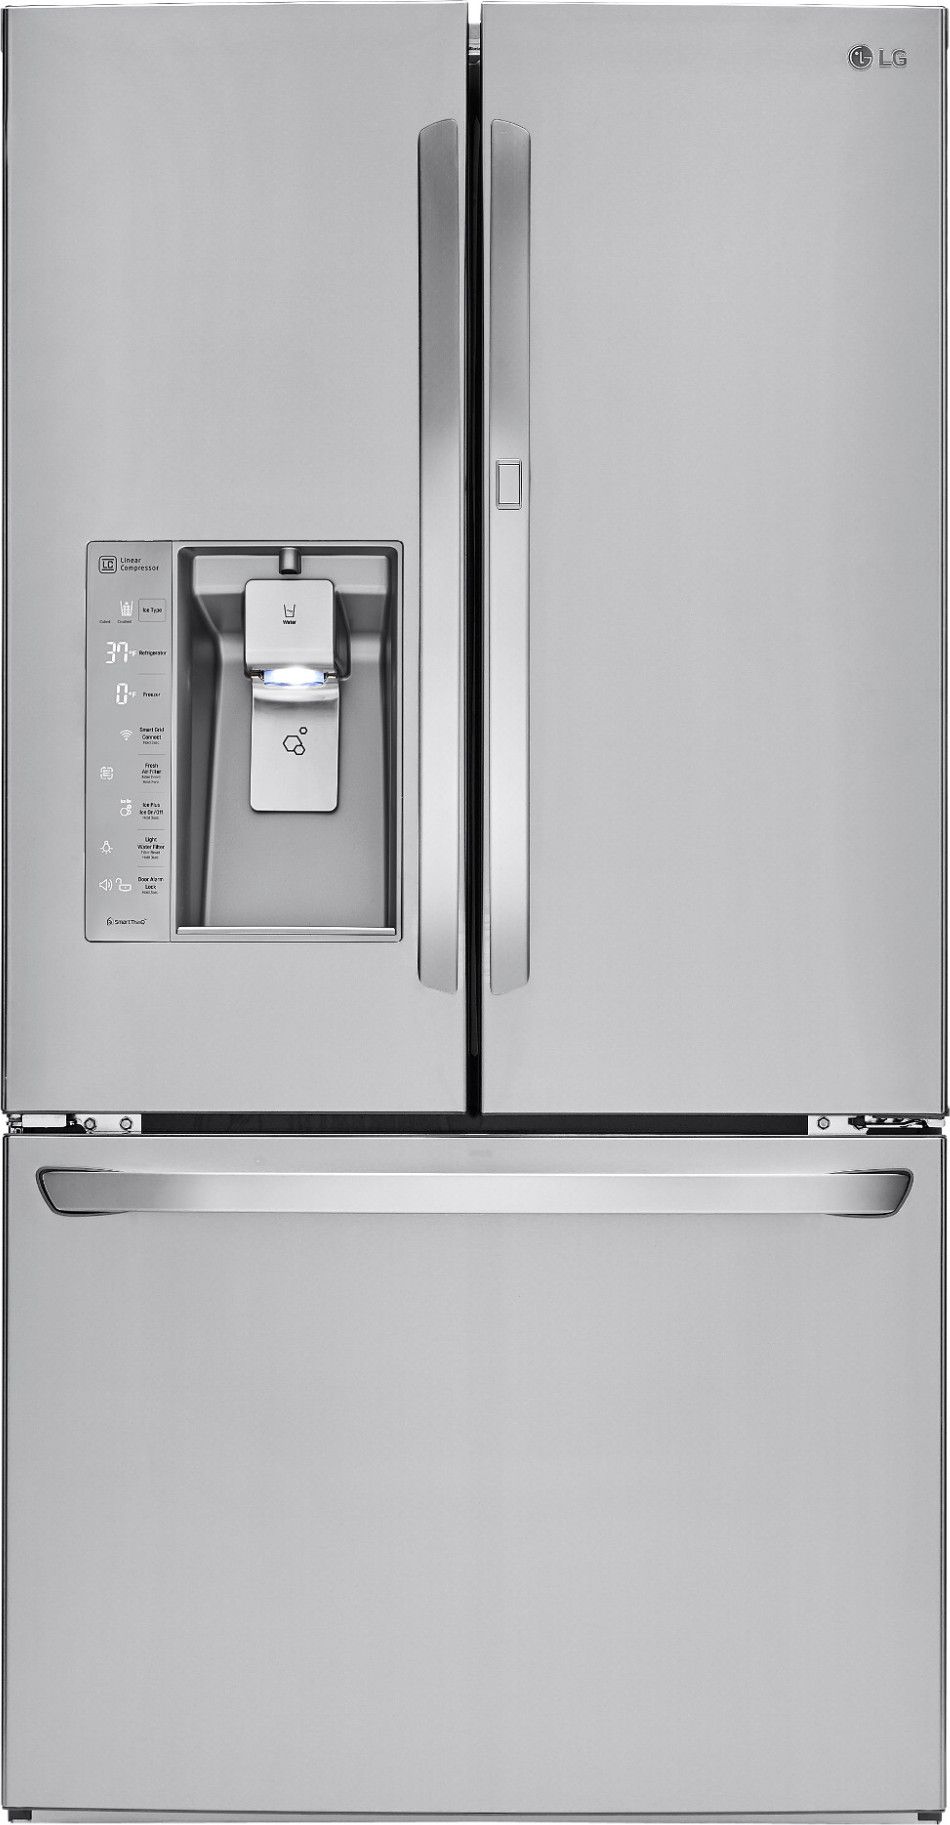 LG LFXS30786S 36 Inch French Door Refrigerator with 29.6 cu. ft. Capacity, Door-in-Door